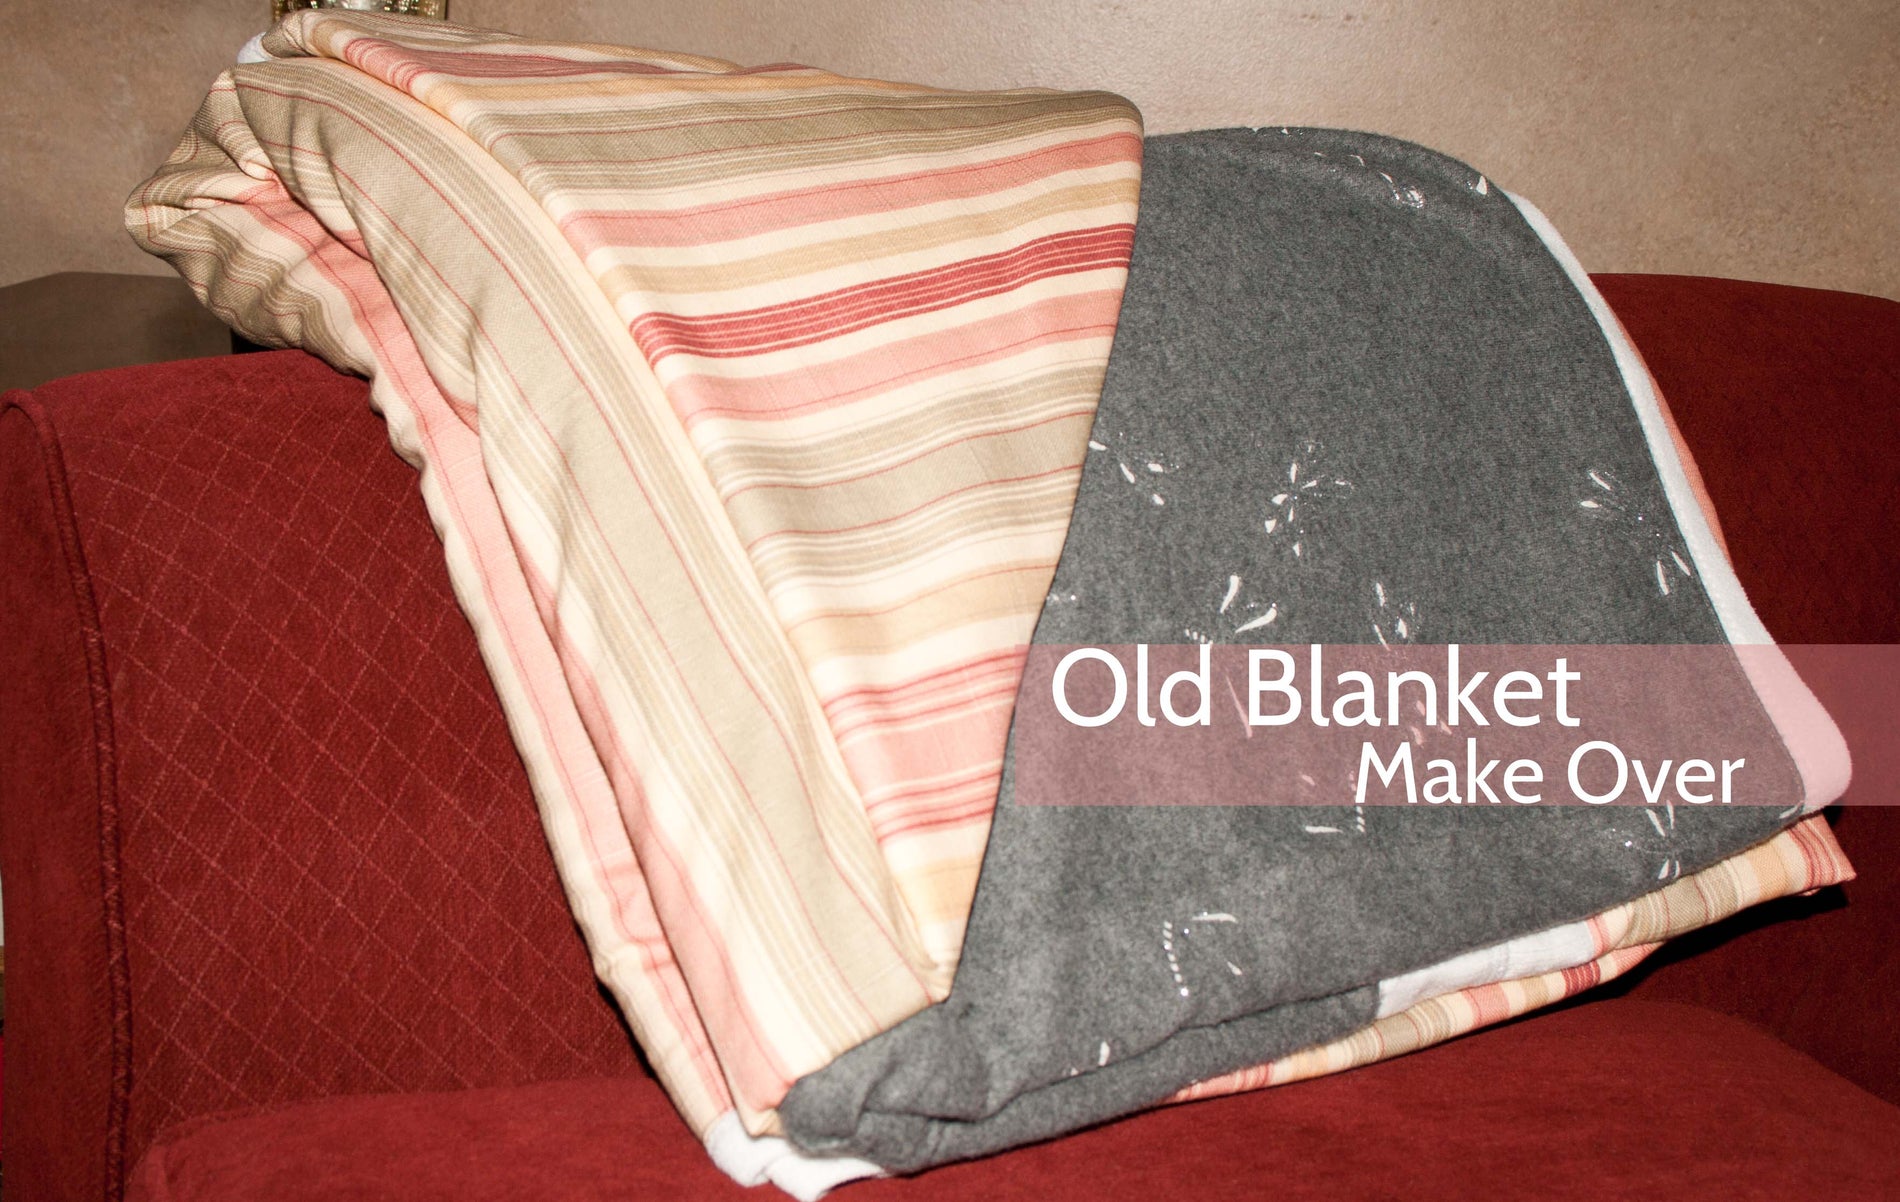 Old Blanket